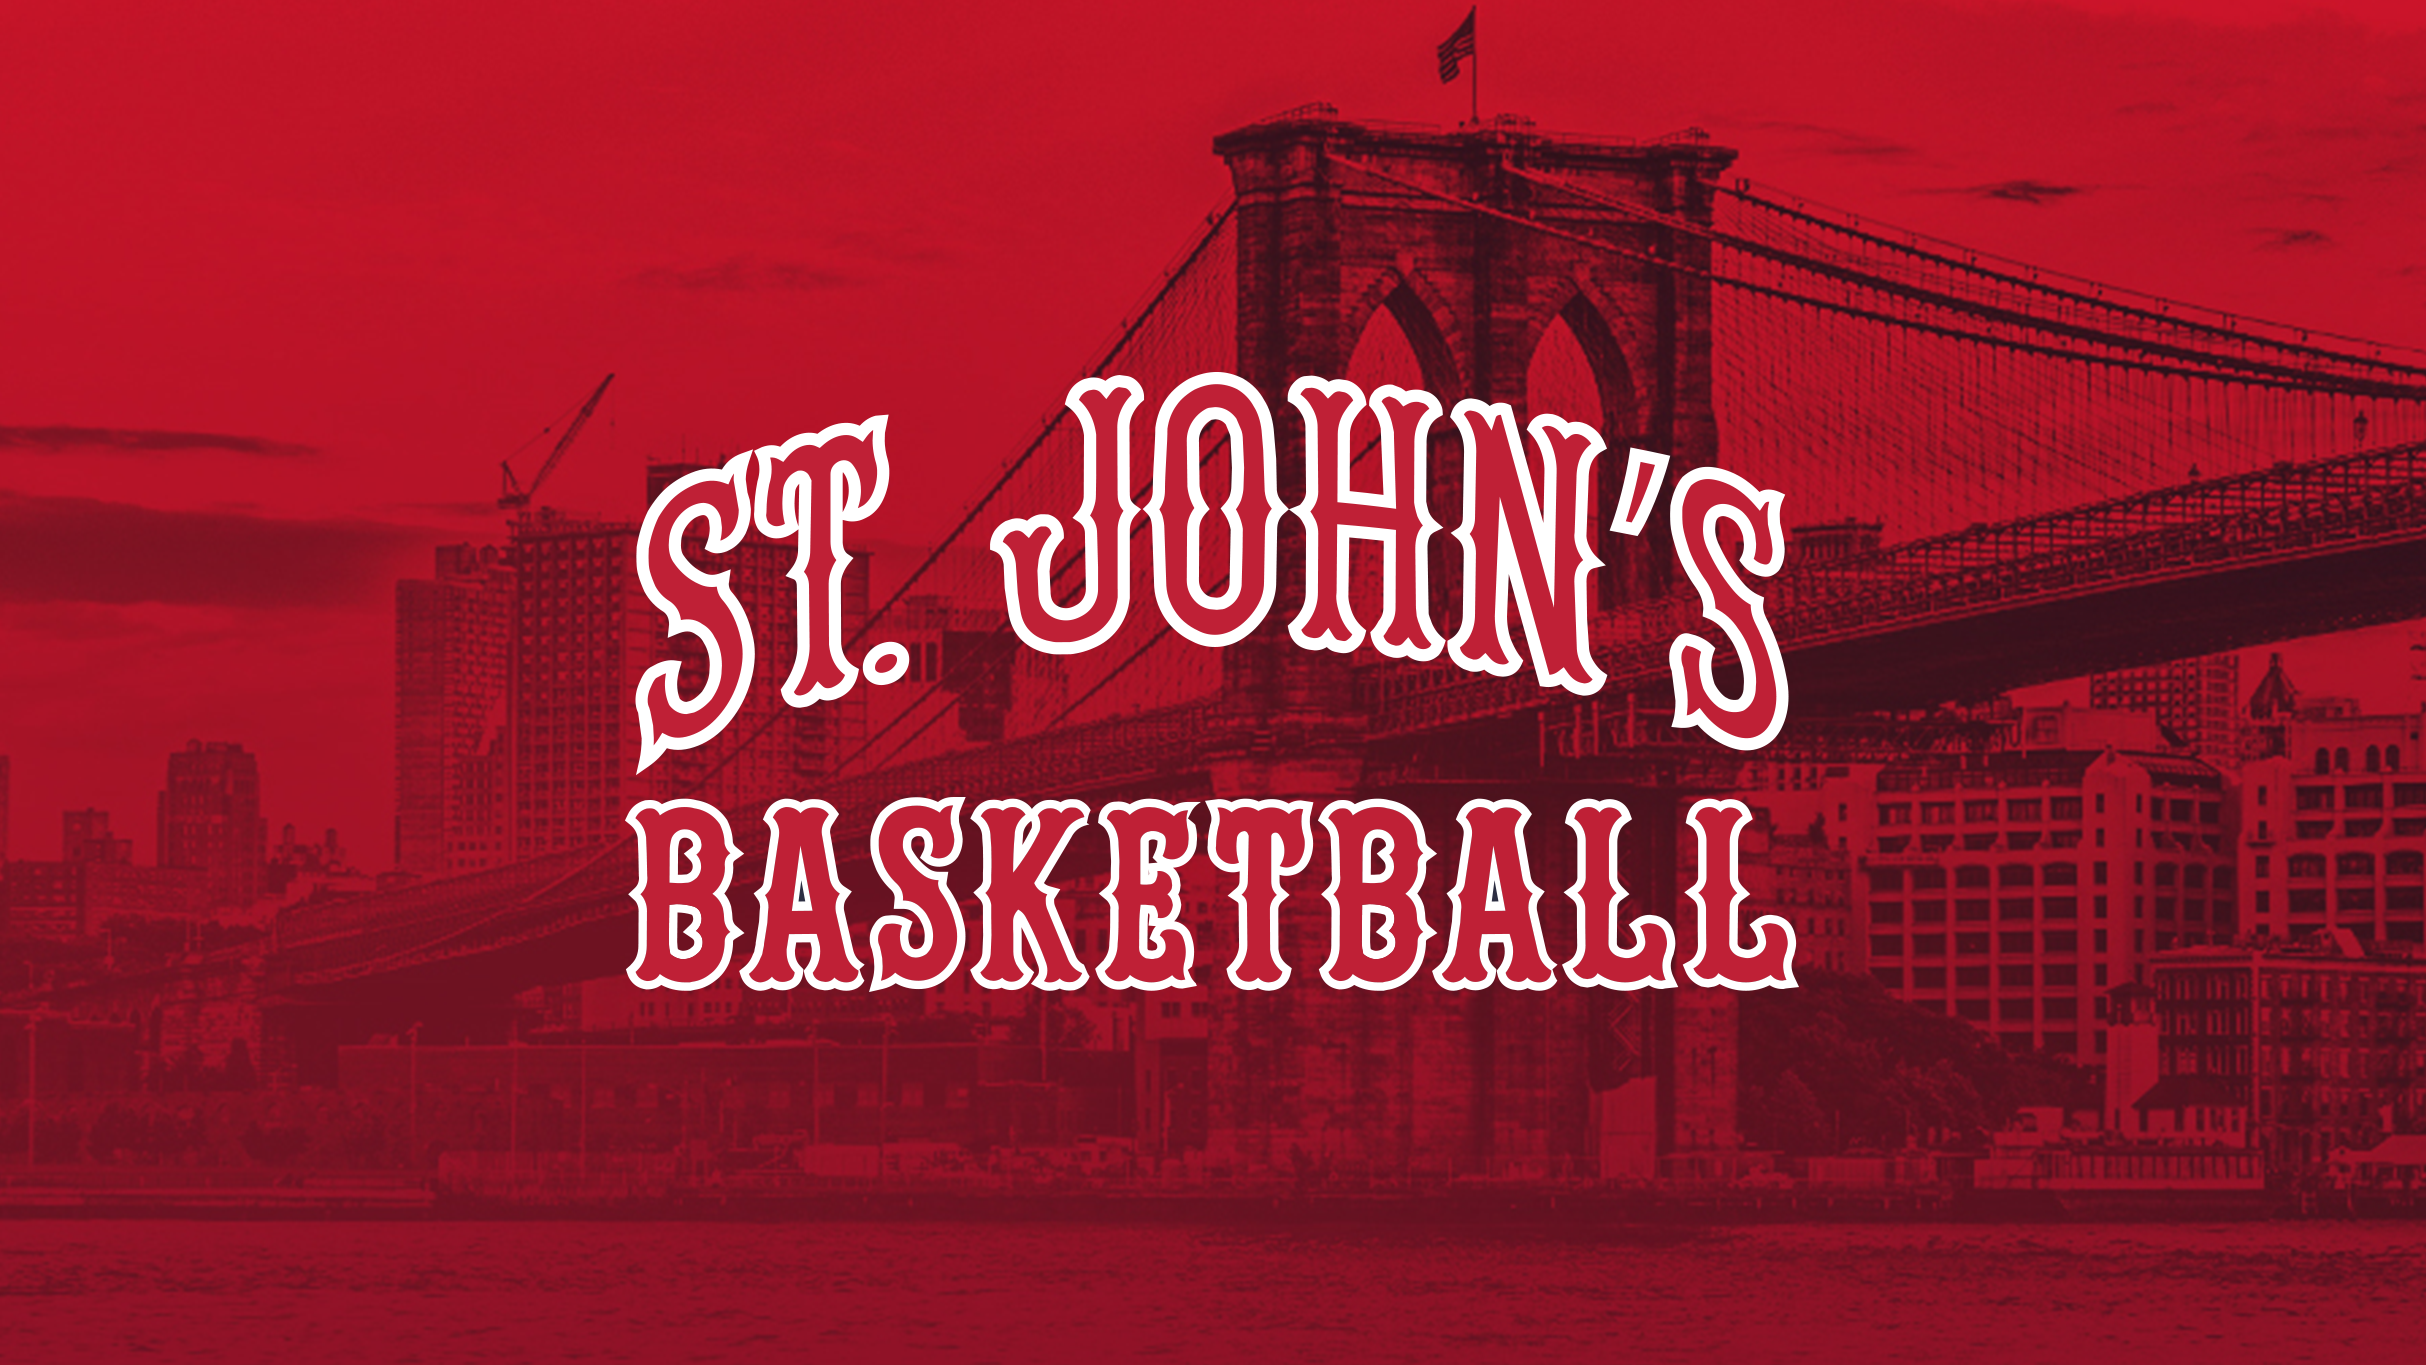 St. John's Red Storm Men's Basketball V. Creighton in New York promo photo for Chase Cardholder Preferred Seating presale offer code